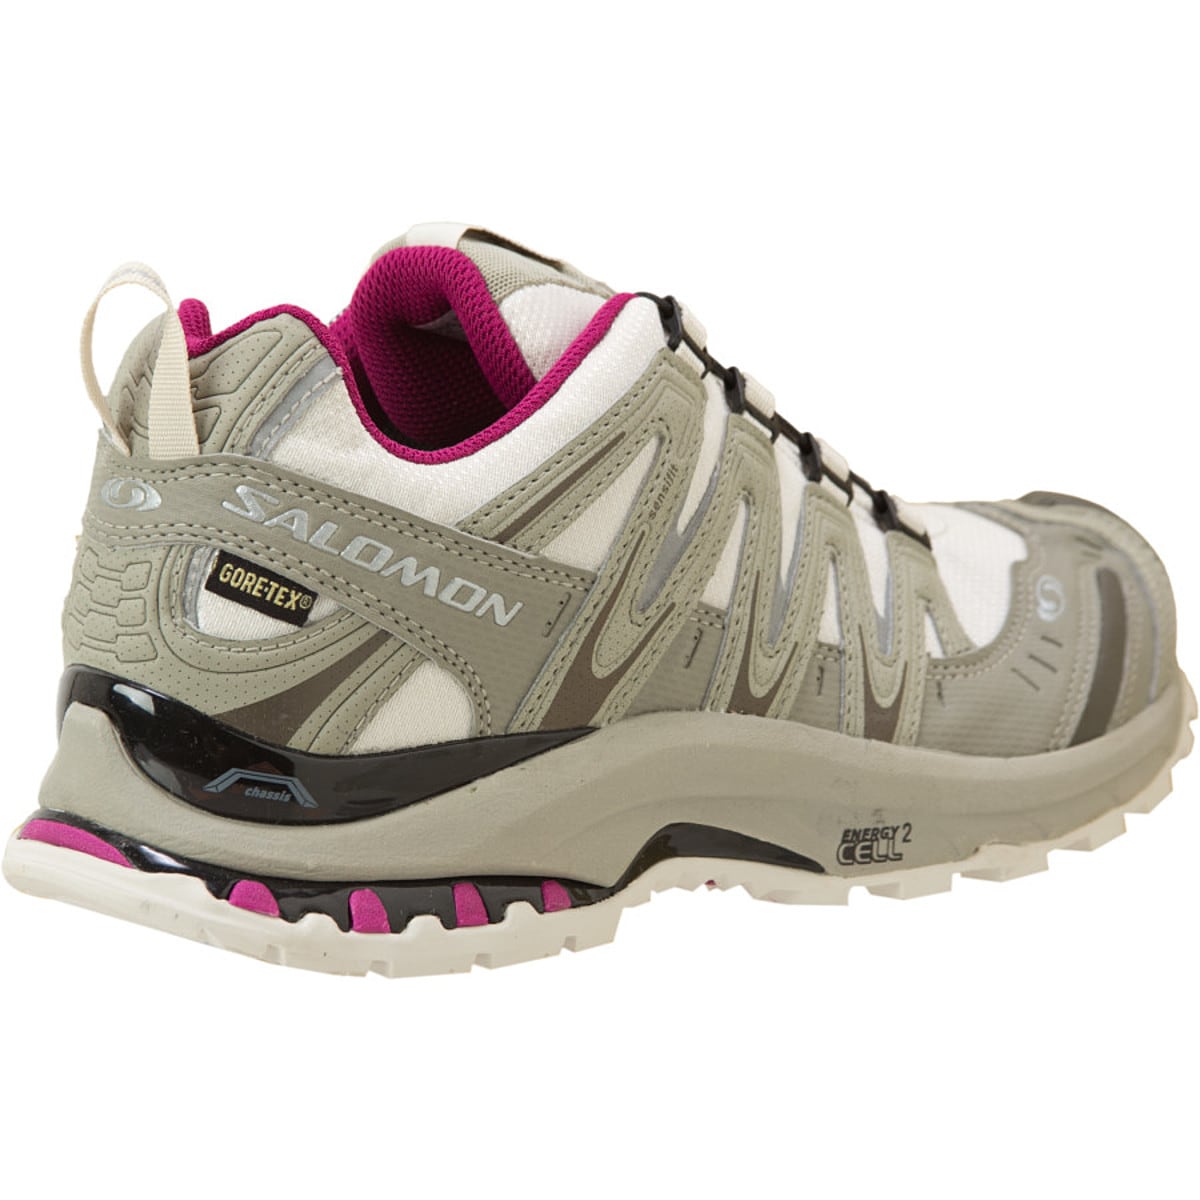 Salomon XA 3D Ultra GTX 2 Trail Running Shoe - -